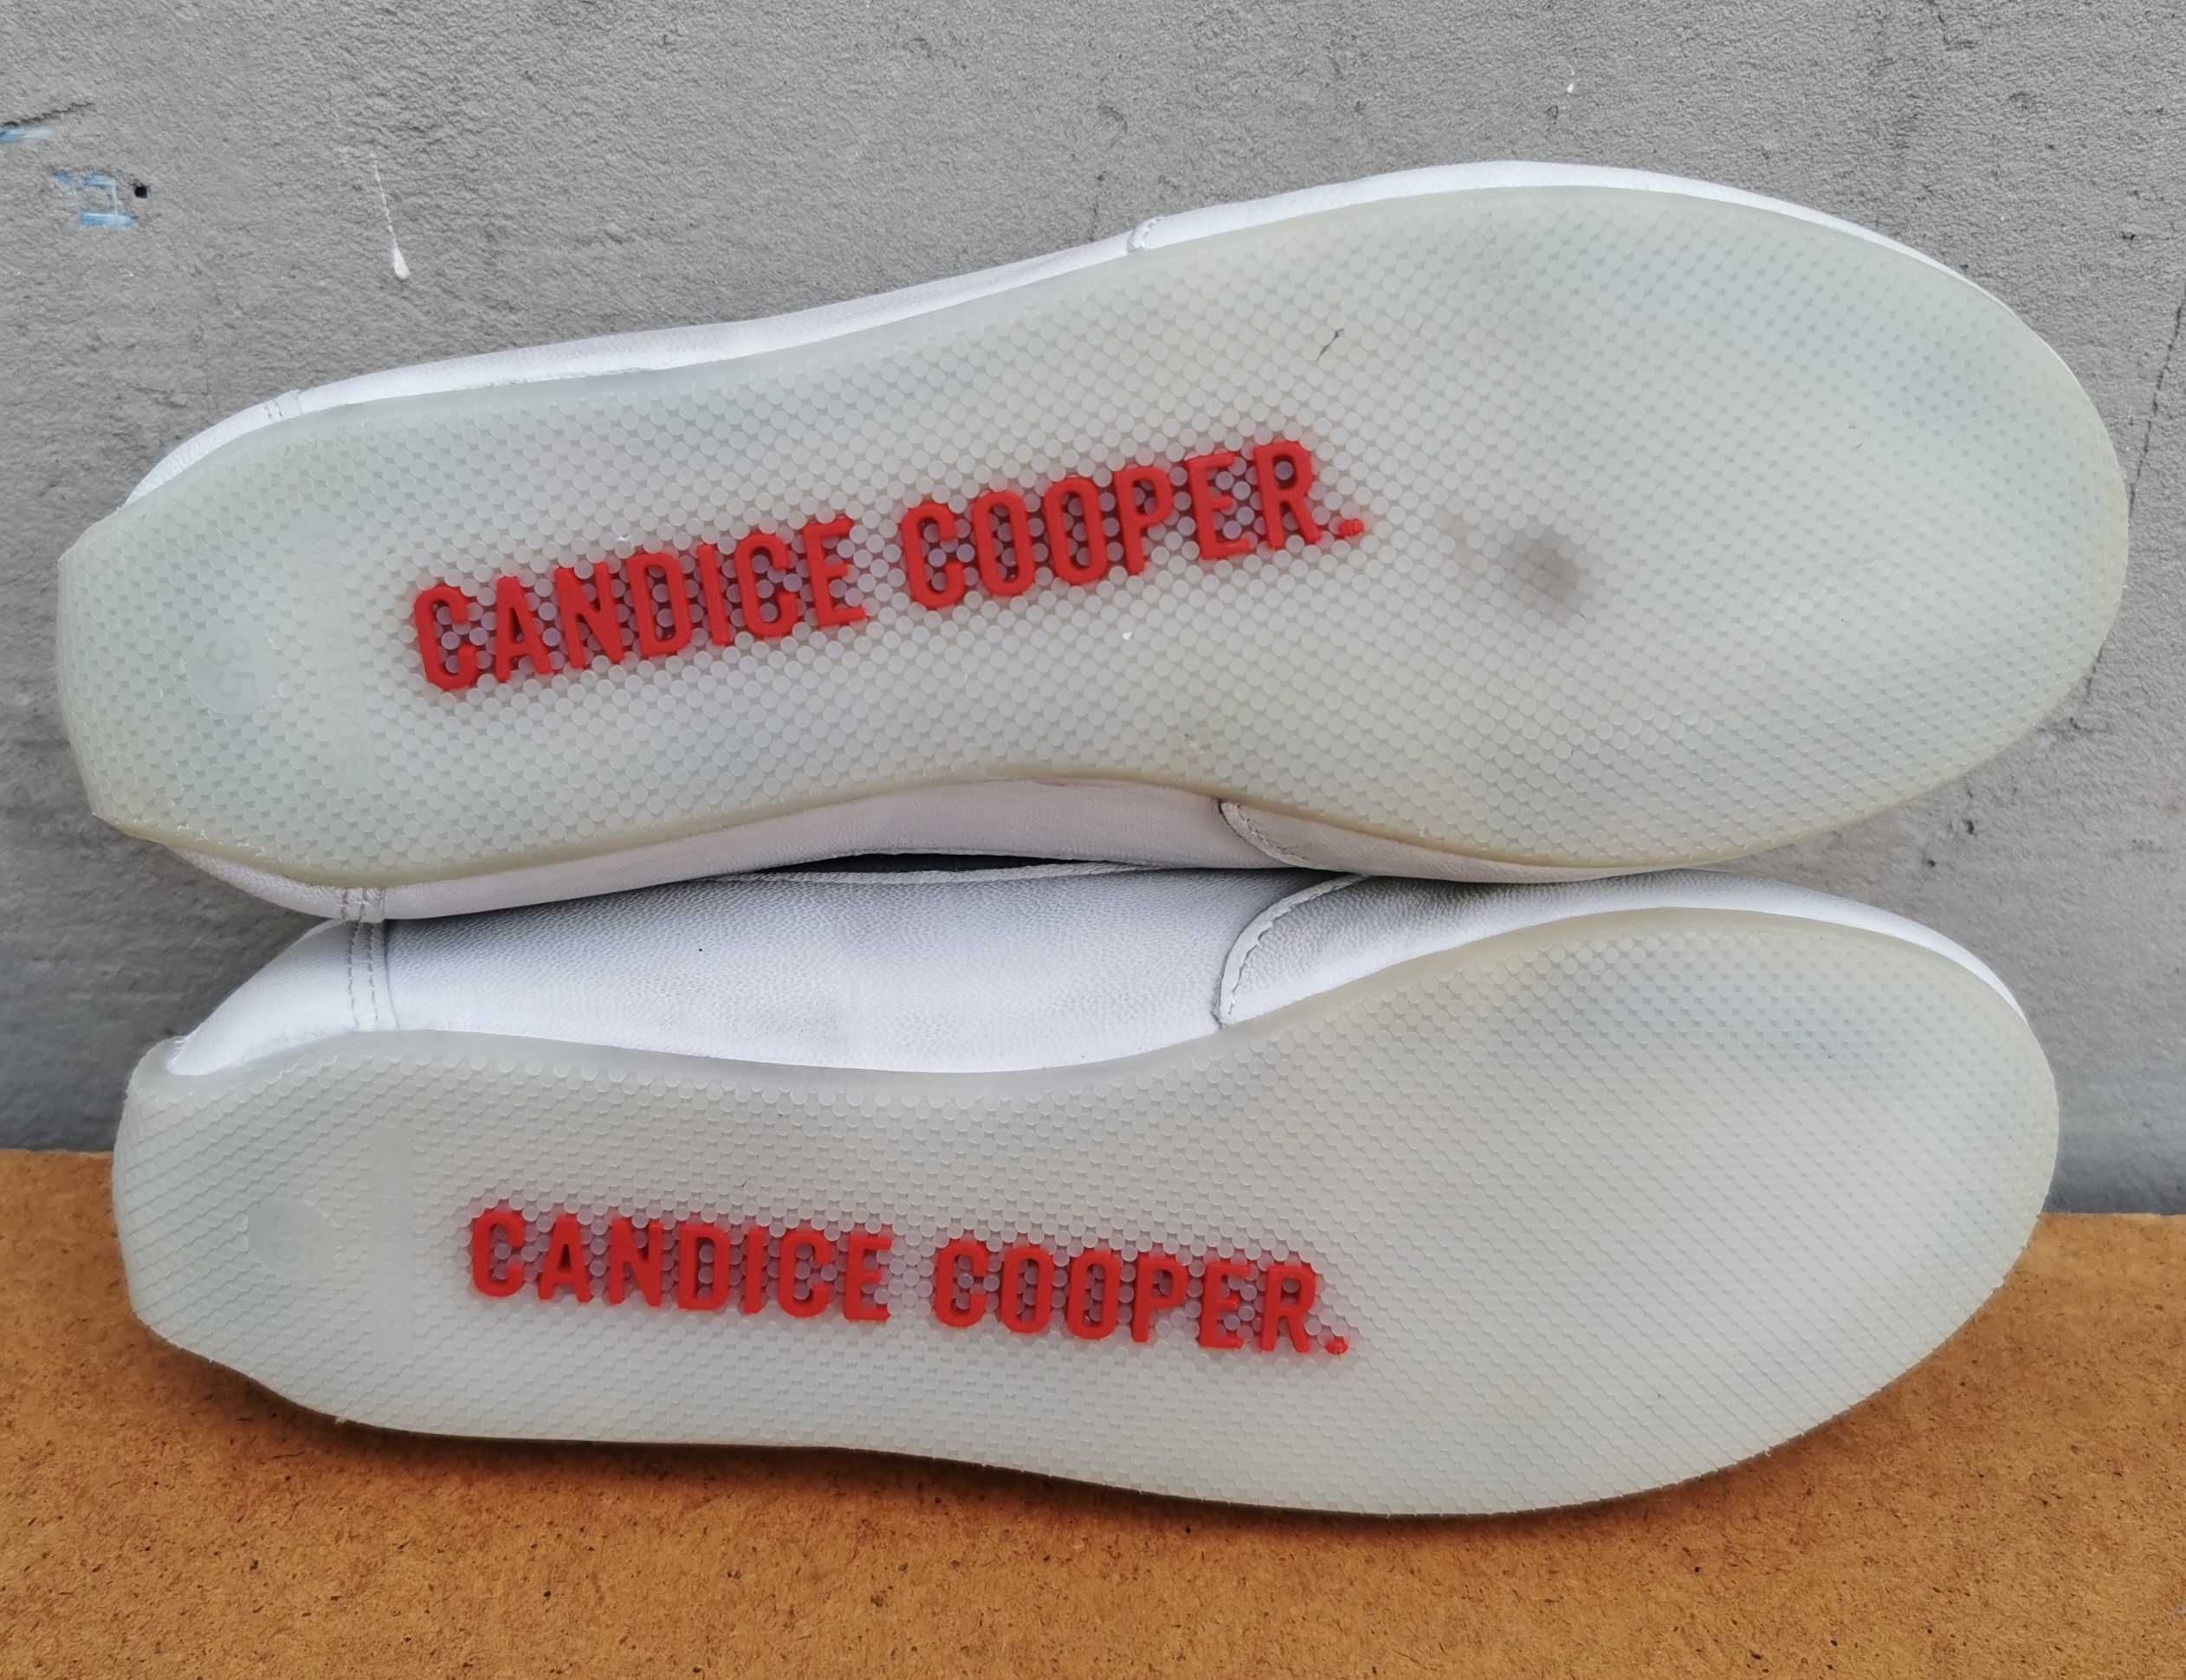 Кожаные кроссовки кеды Candice Cooper 35 р. Оригинал